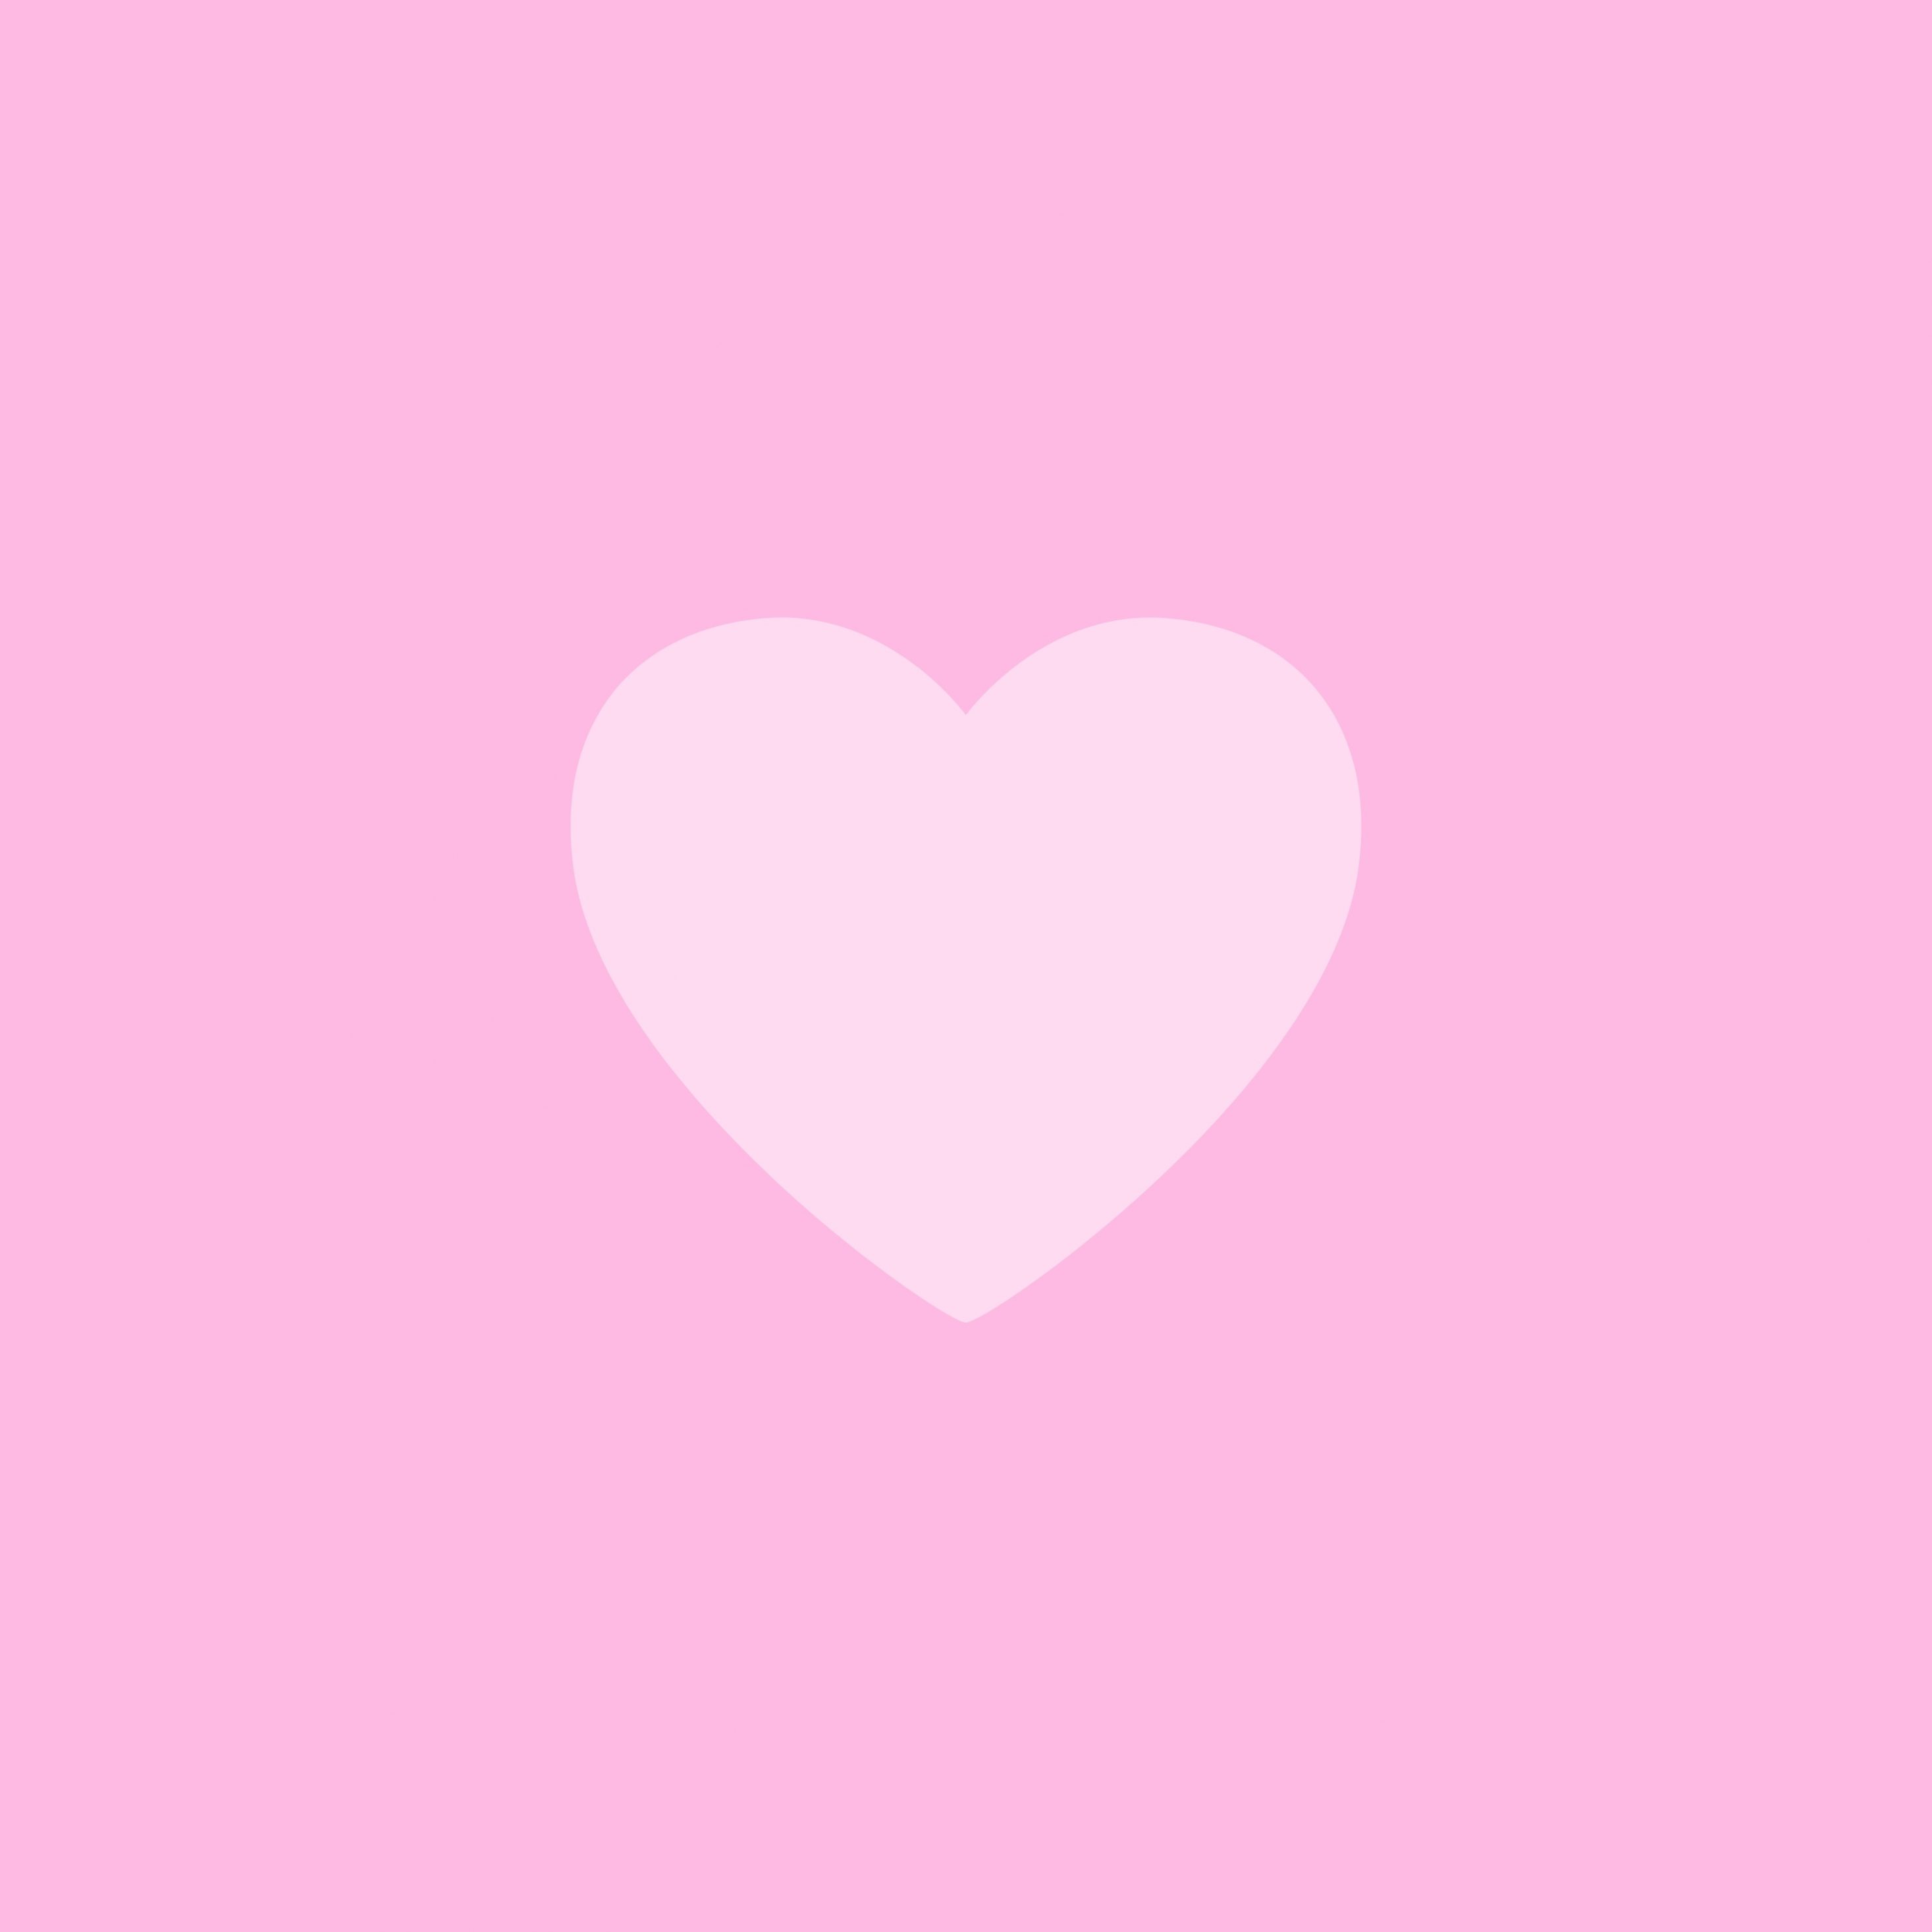 2934x2934 iOS iPad wallpaper 4k Love Heart Pink Background iPad Wallpaper 2934x2934 pixels resolution